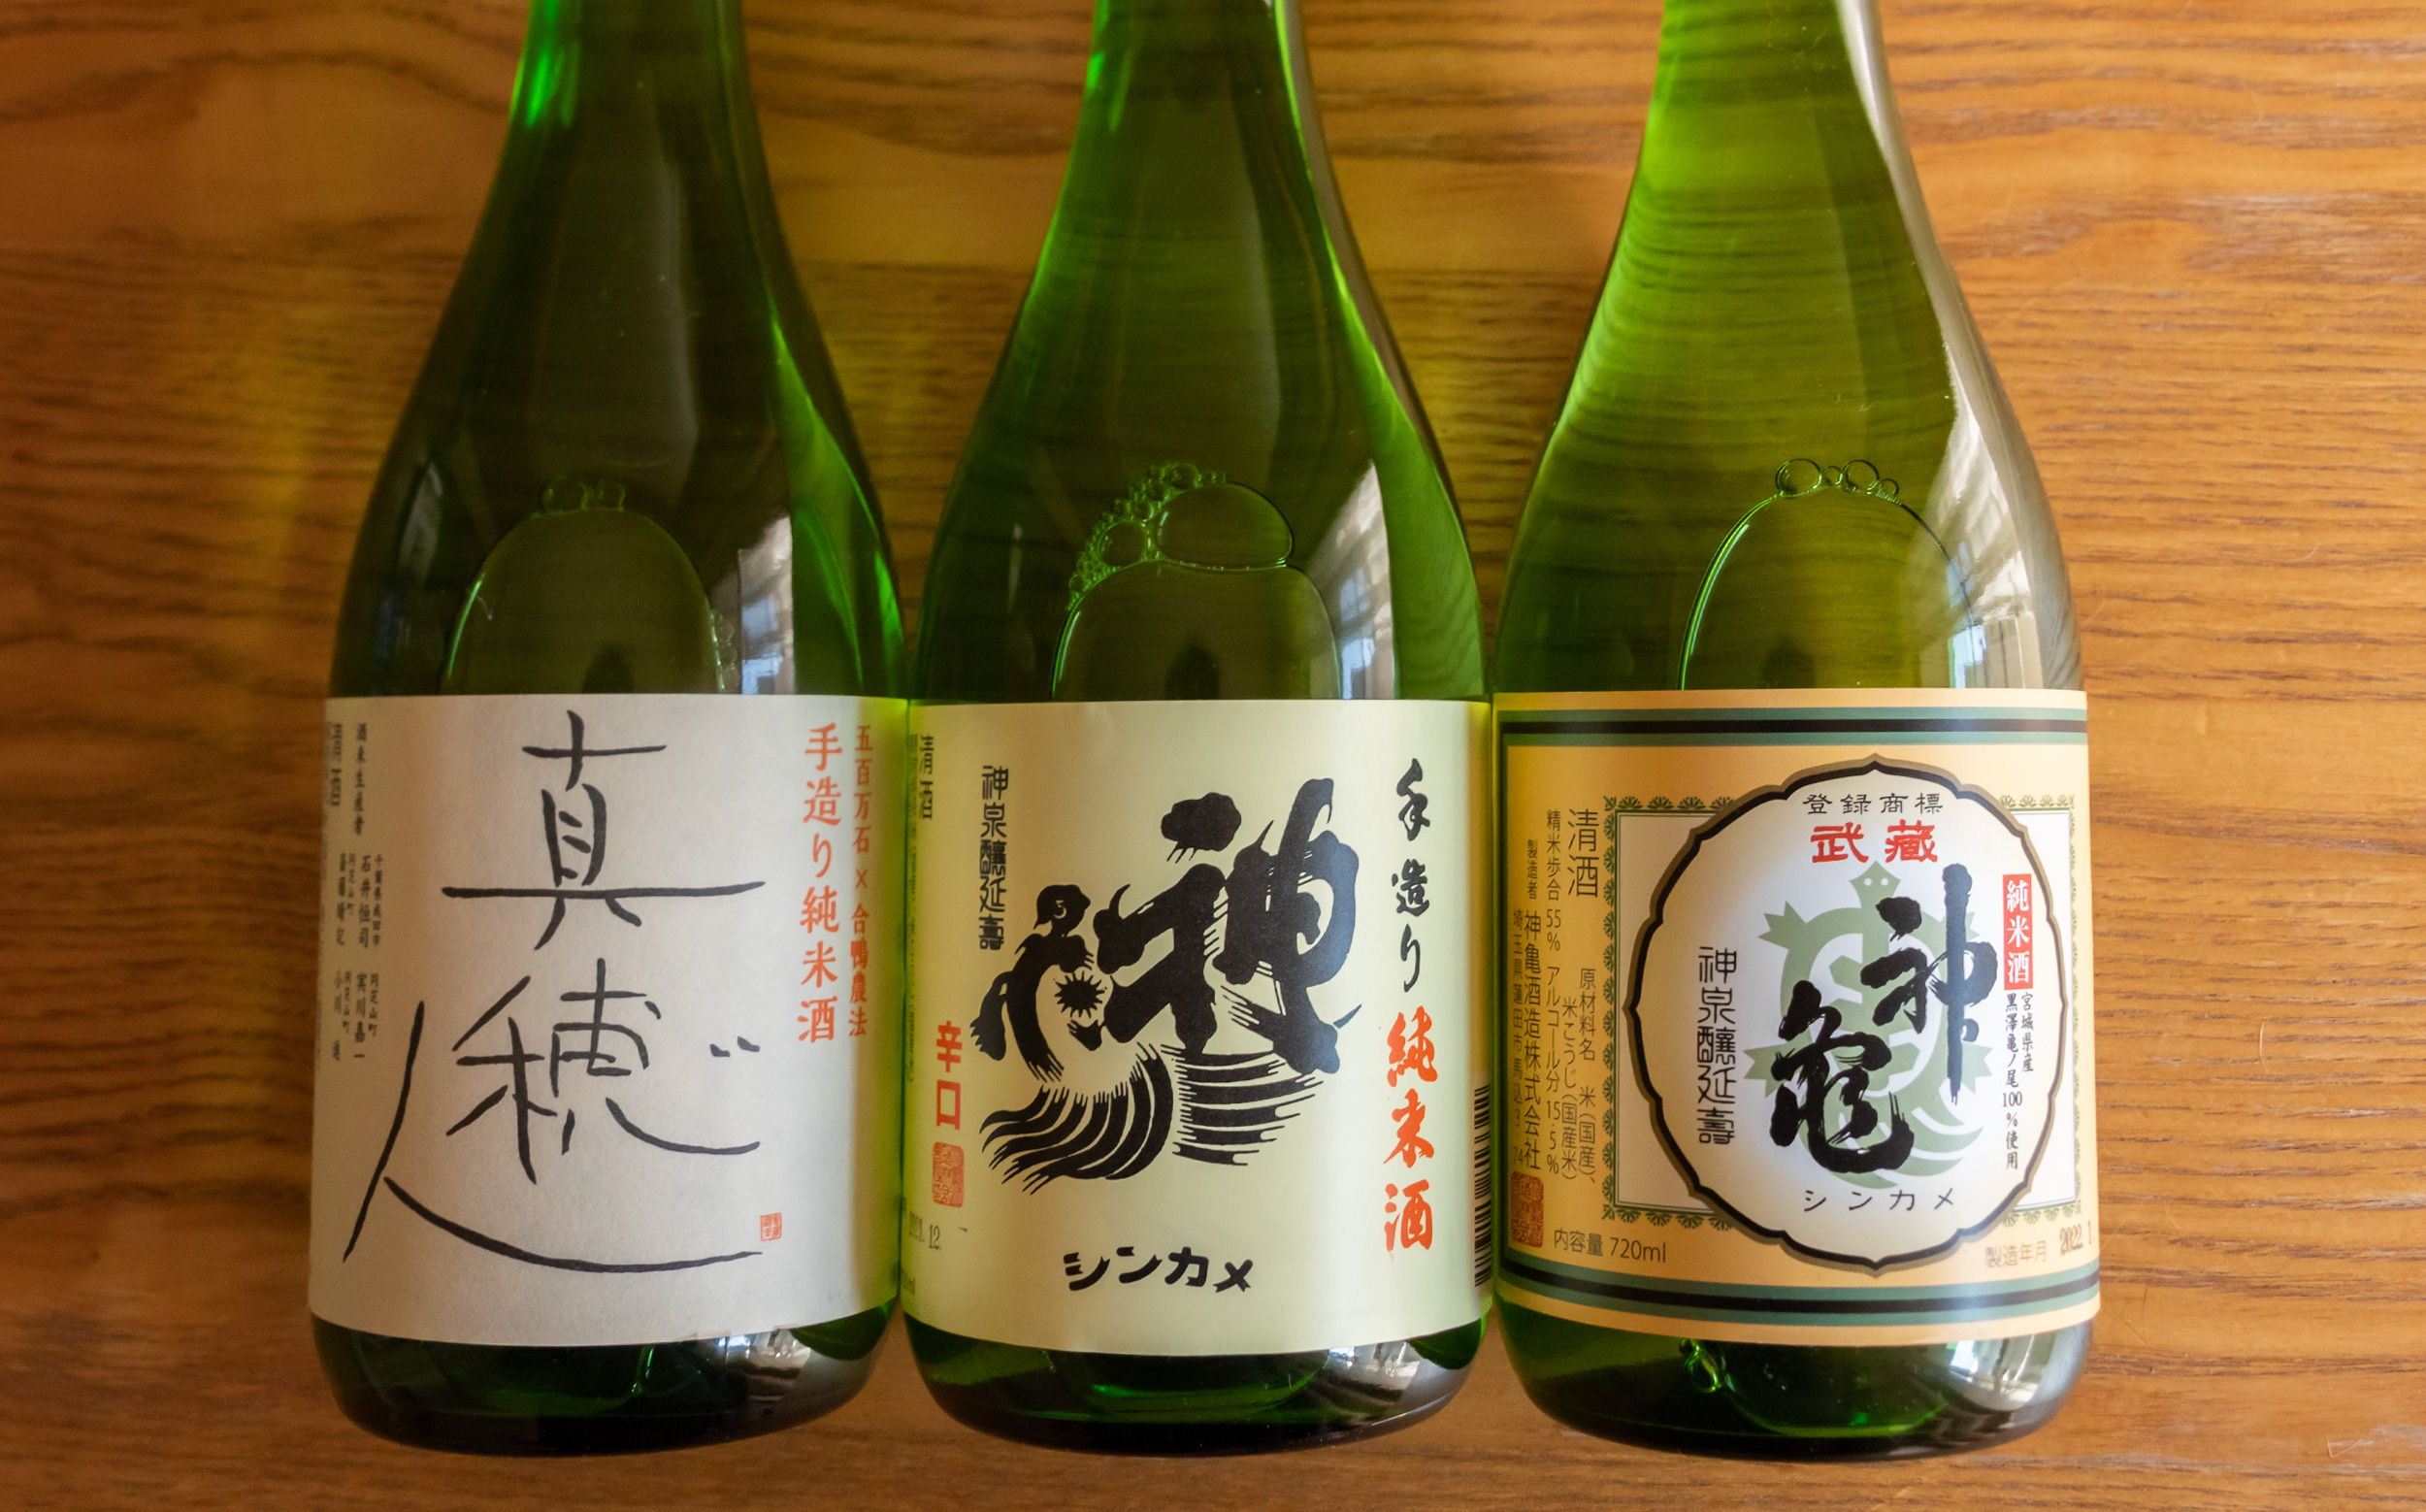 神亀酒造 神亀 「真穂人」純米酒、純米清酒、武蔵神亀 亀の尾 純米酒